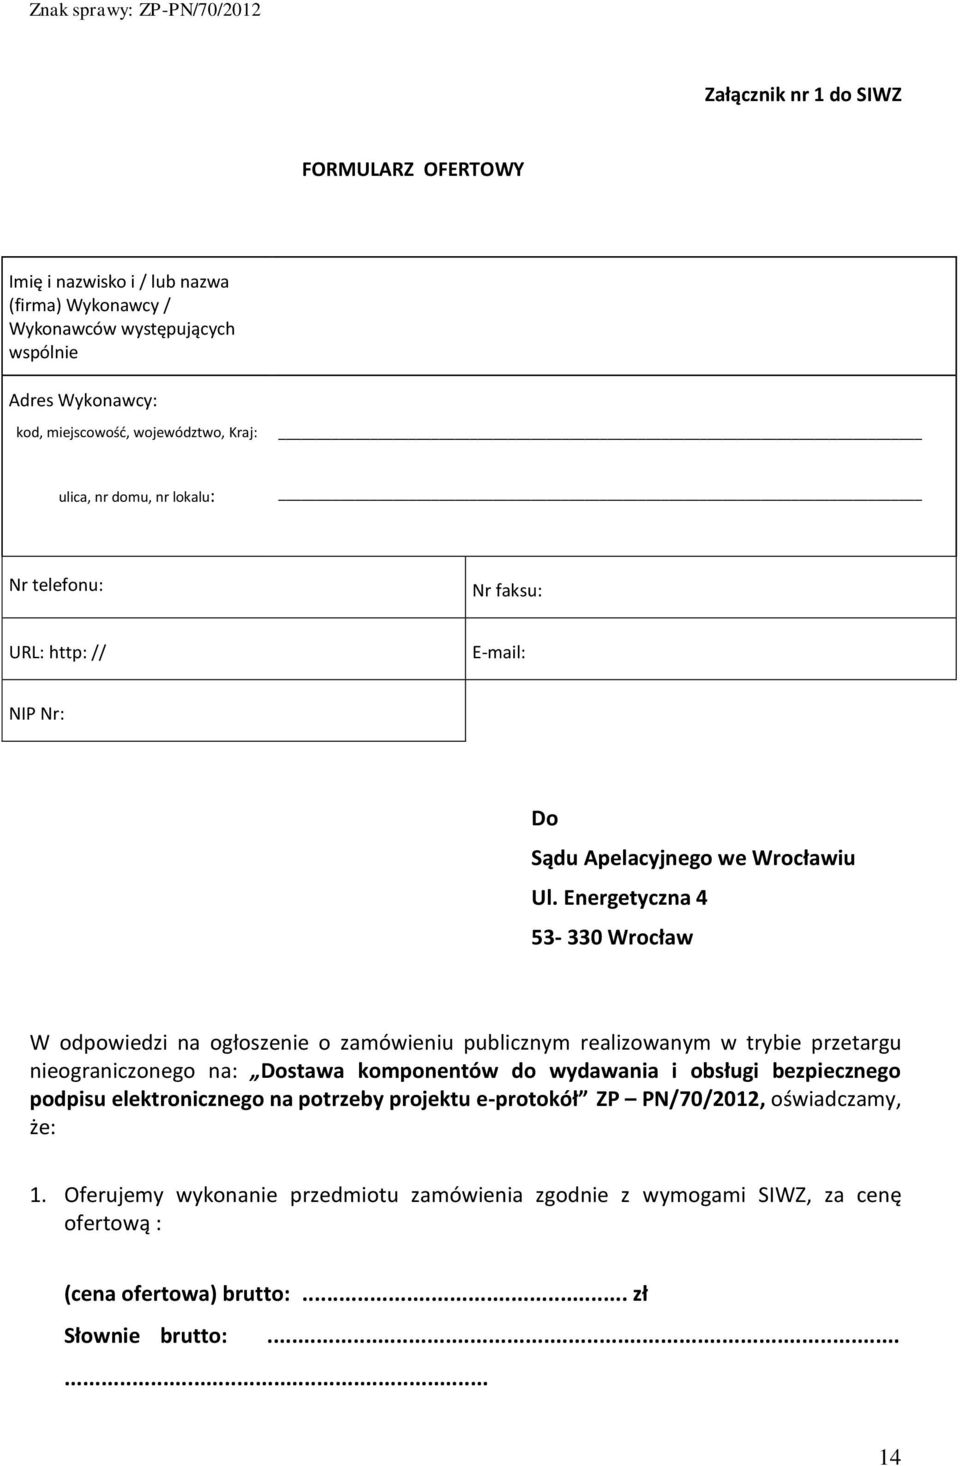 Energetyczna 4 53-330 Wrocław W odpowiedzi na ogłoszenie o zamówieniu publicznym realizowanym w trybie przetargu nieograniczonego na: Dostawa komponentów do wydawania i obsługi